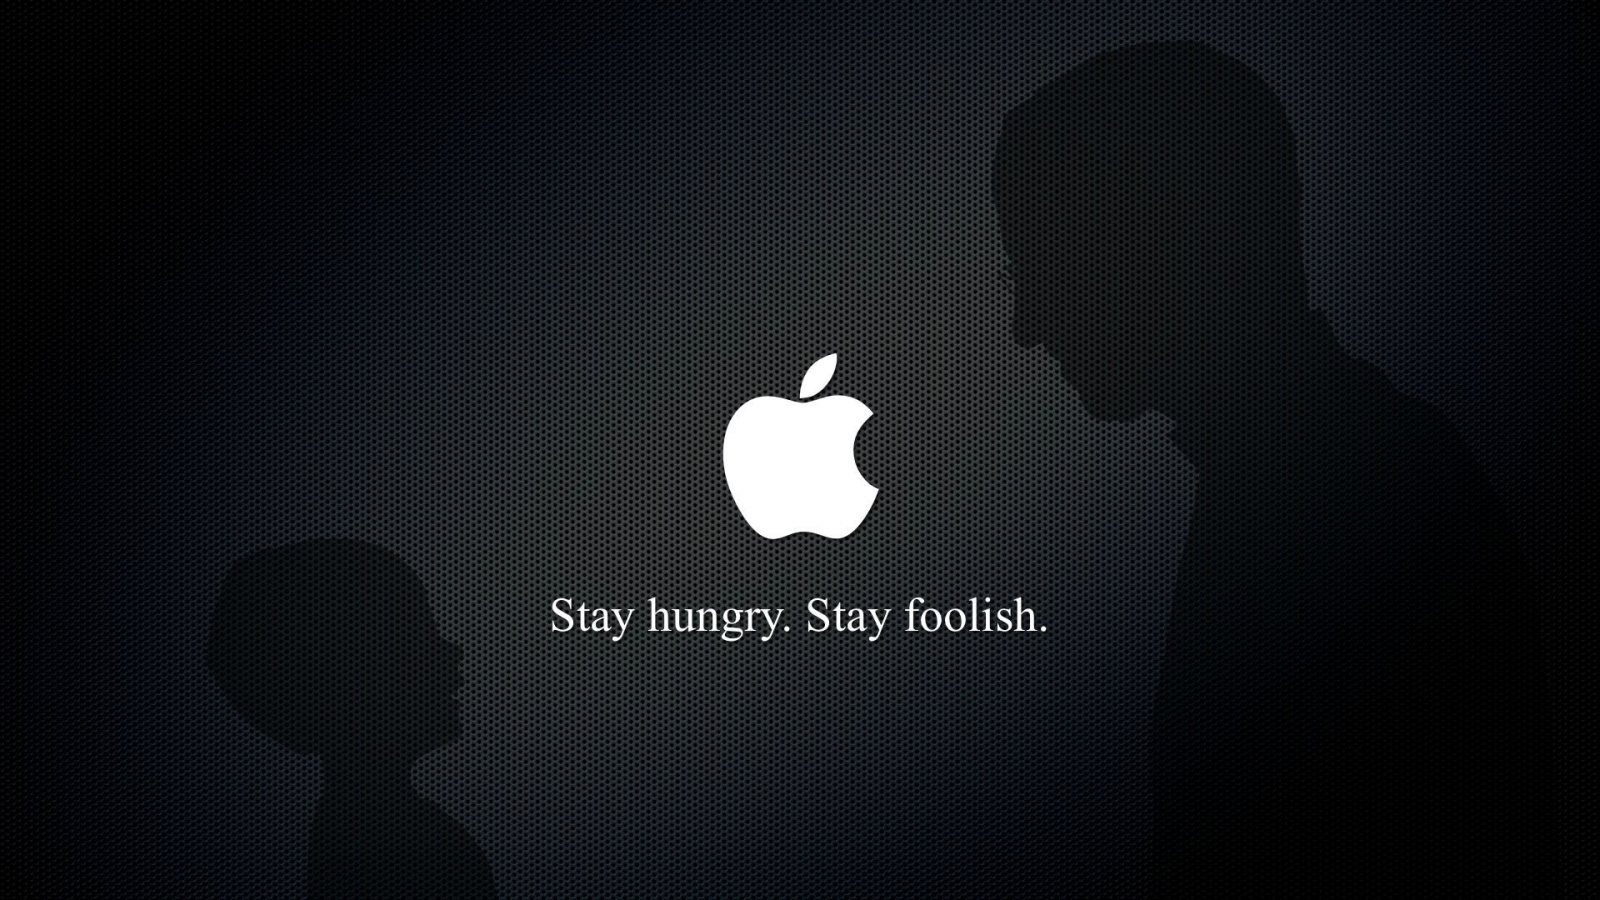 Steve Jobs HD Wallpaper Quotes Desktop